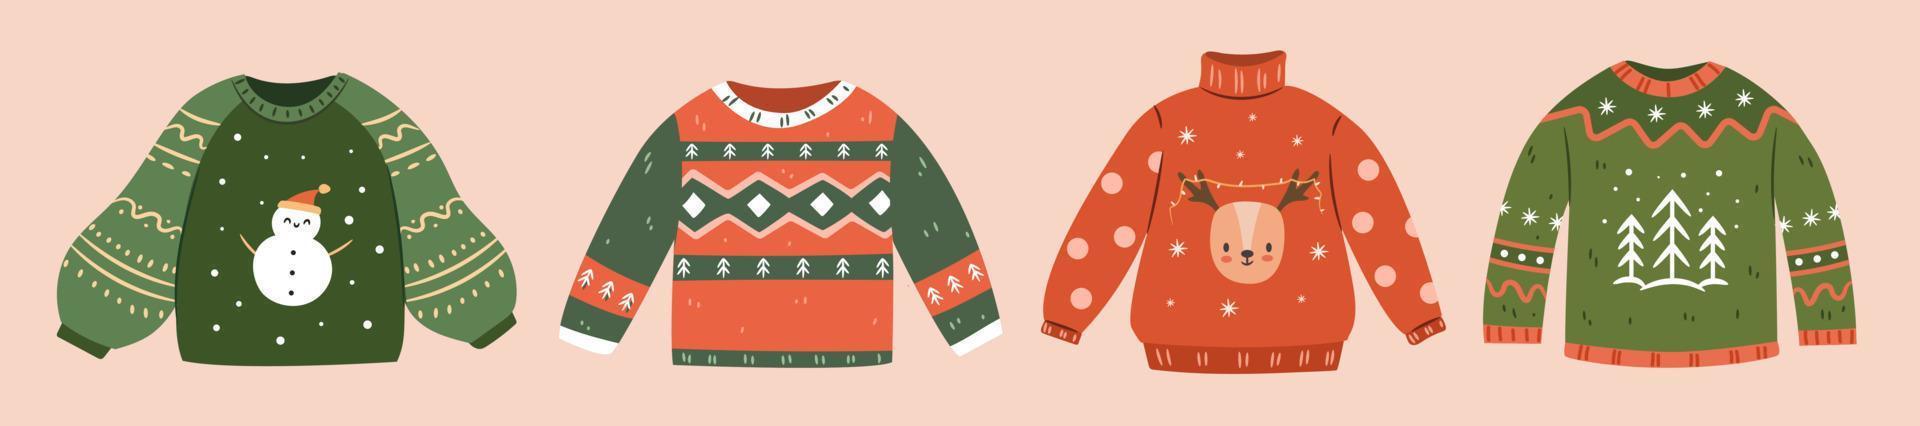 uppsättning av ful jul tröjor. samling av stickat vinter- tröjor med jul ornament. ritad för hand vektor illustration